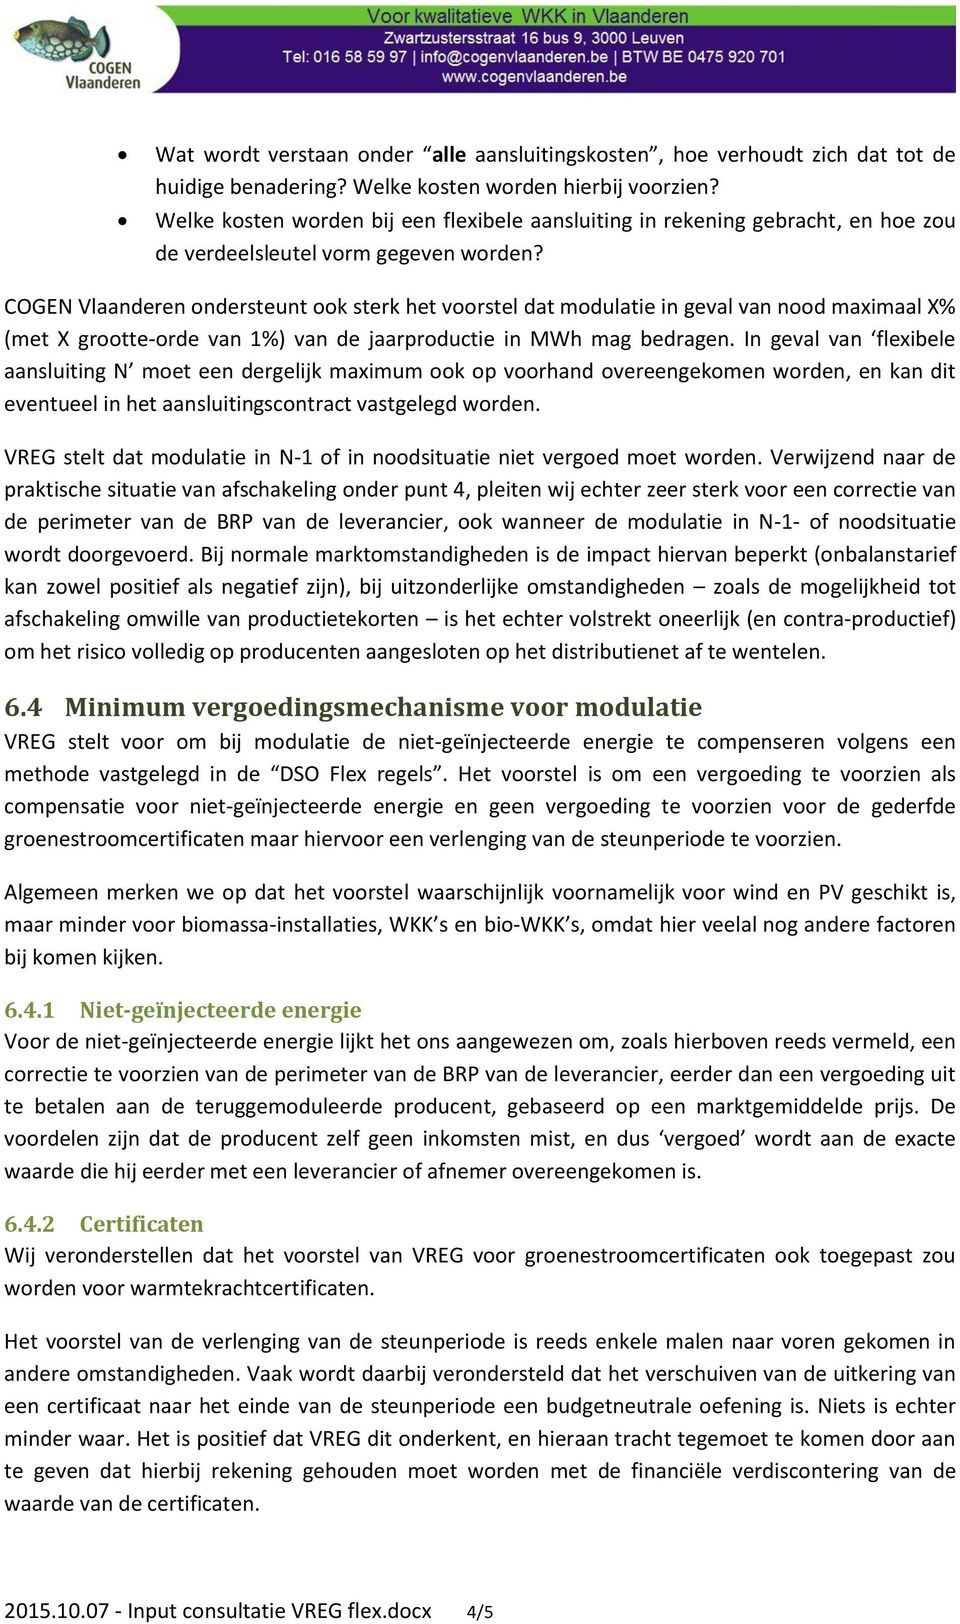 COGEN Vlaanderen ondersteunt ook sterk het voorstel dat modulatie in geval van nood maximaal X% (met X grootte-orde van 1%) van de jaarproductie in MWh mag bedragen.